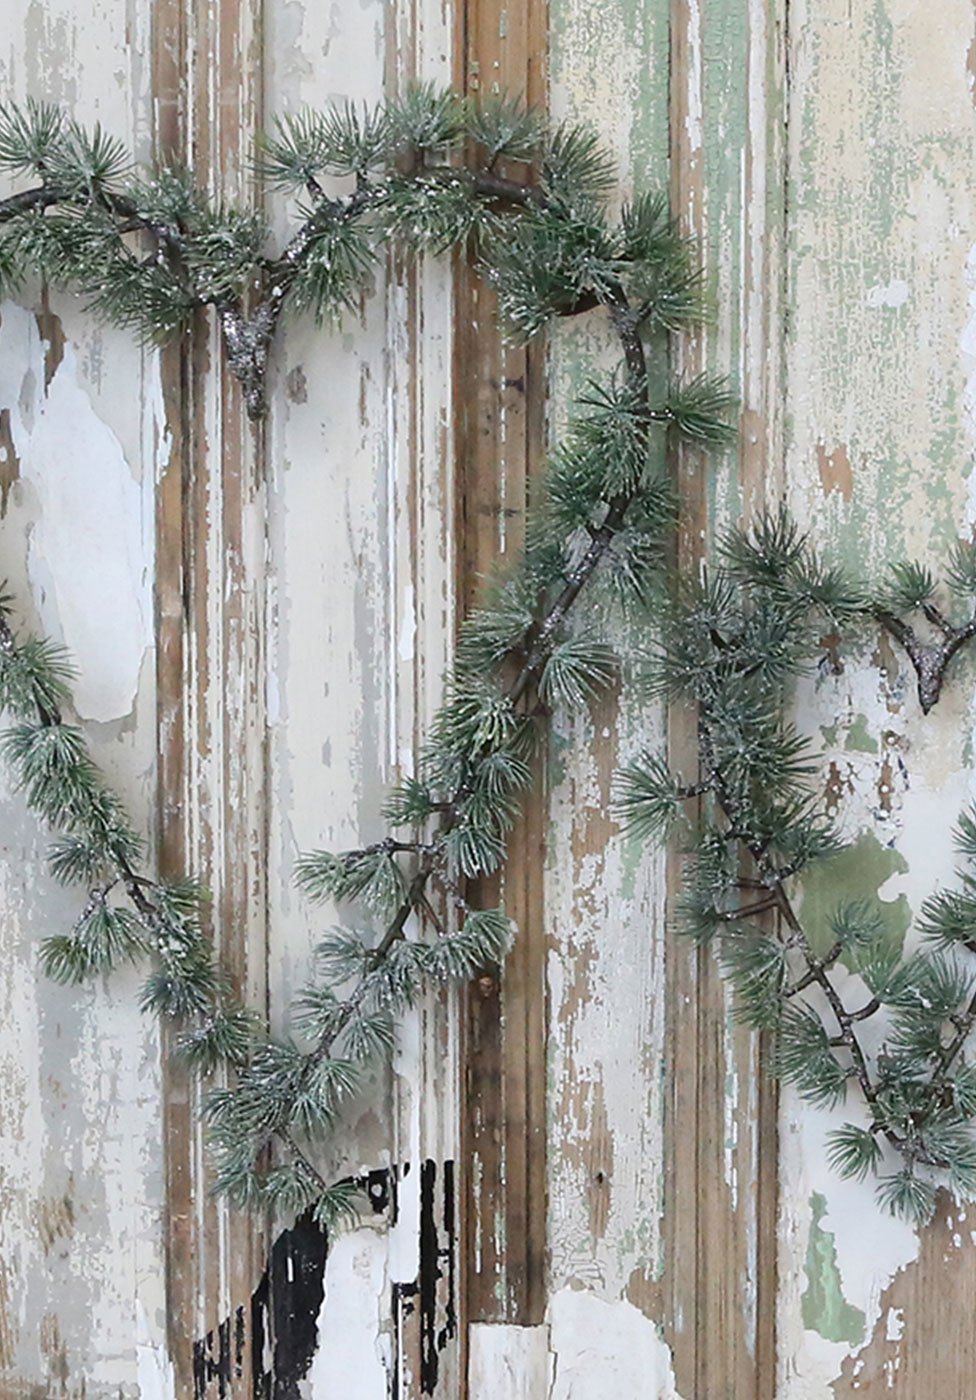 Kunstpflanzen, Tannenbäume und Kränze für Weihnachten Impressionen Bild 2